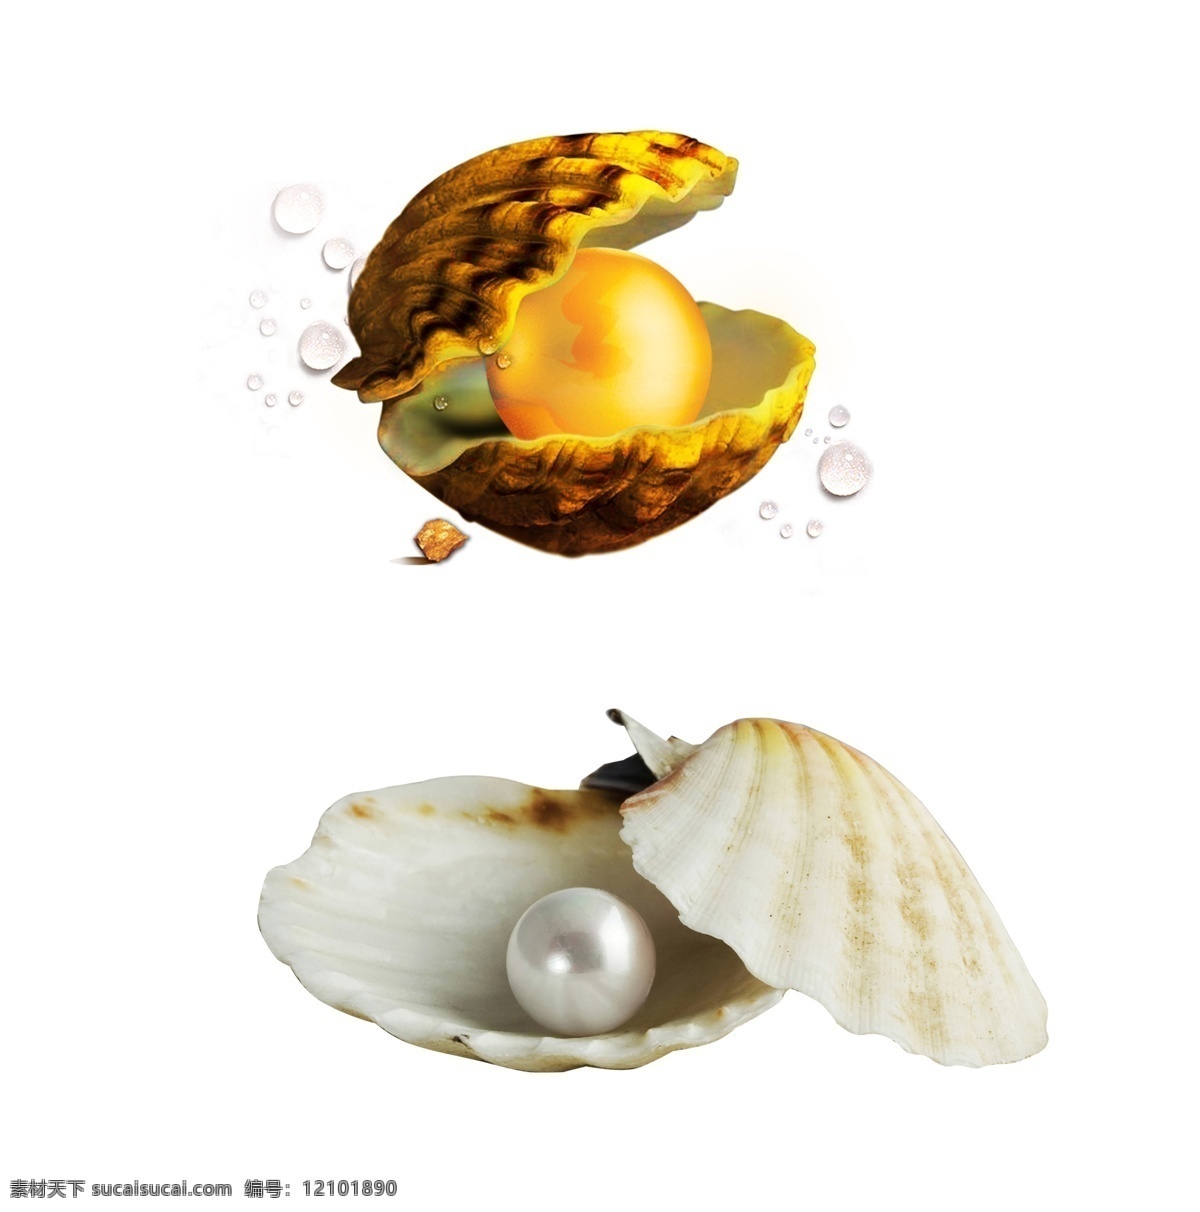 珍珠贝壳 贝壳里的珍珠 珍珠素材 贝壳珍珠 海贝壳 天然珍珠 纯天然珍珠 海边珍珠 沙滩上的贝壳 珍珠 贝壳 珍珠纤维